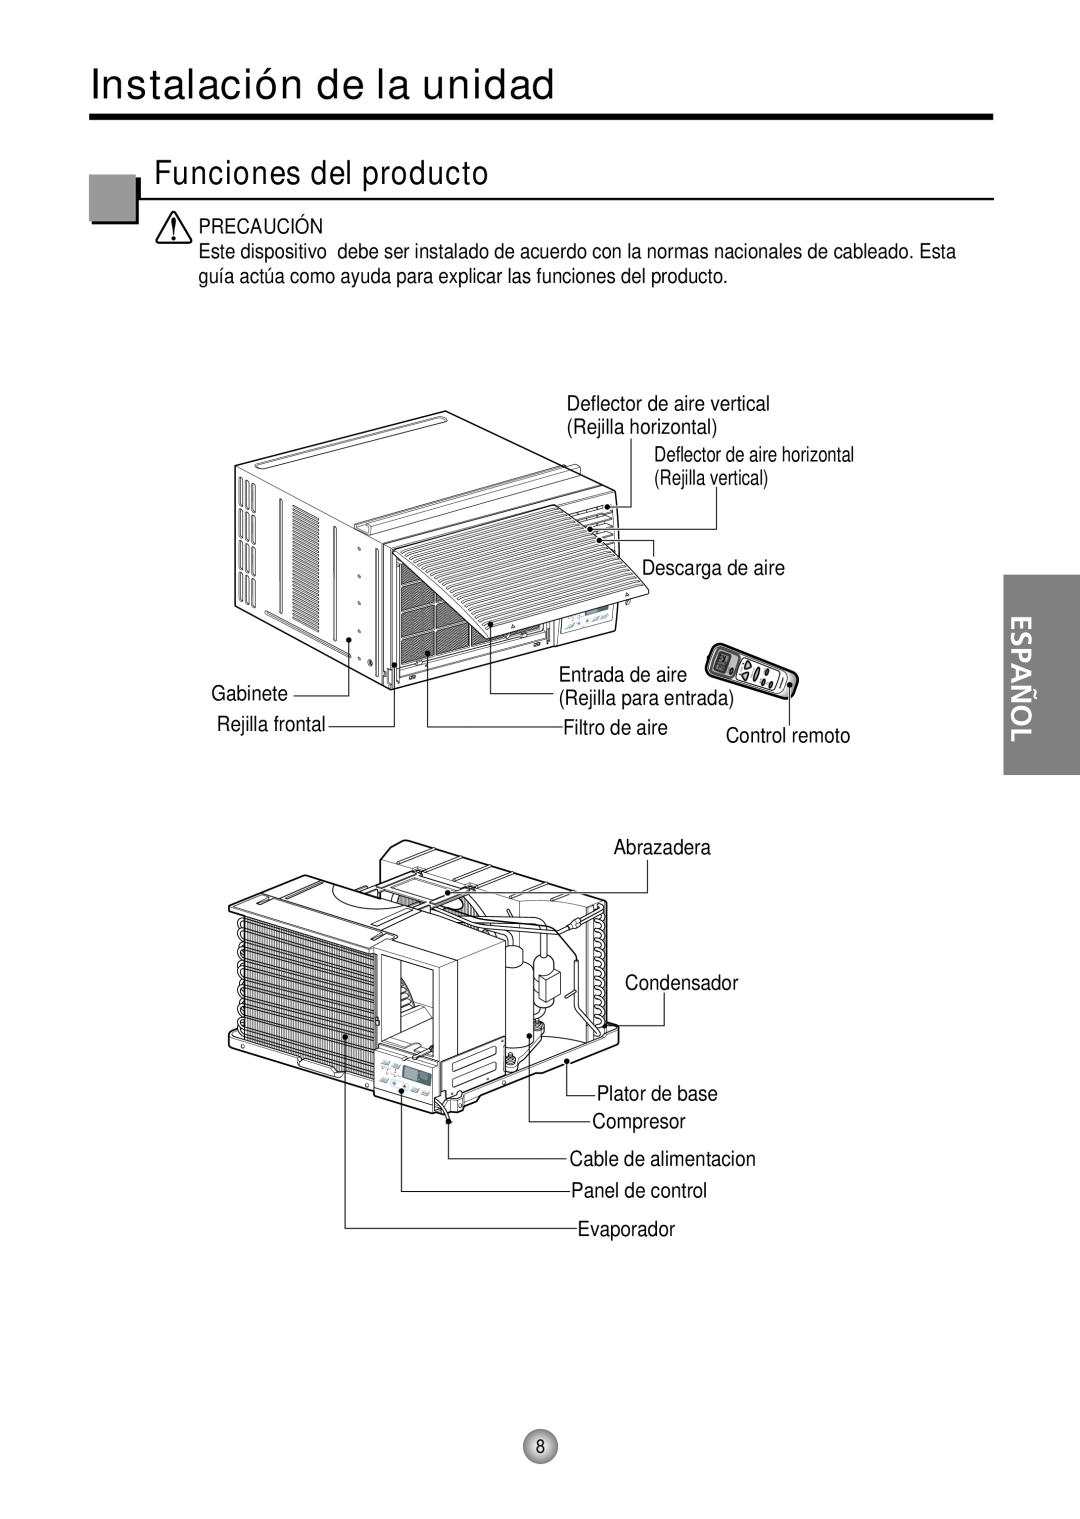 Friedrich CP12 Instalación de la unidad, Funciones del producto, Español, Plator de base, Compresor, Panel de control 